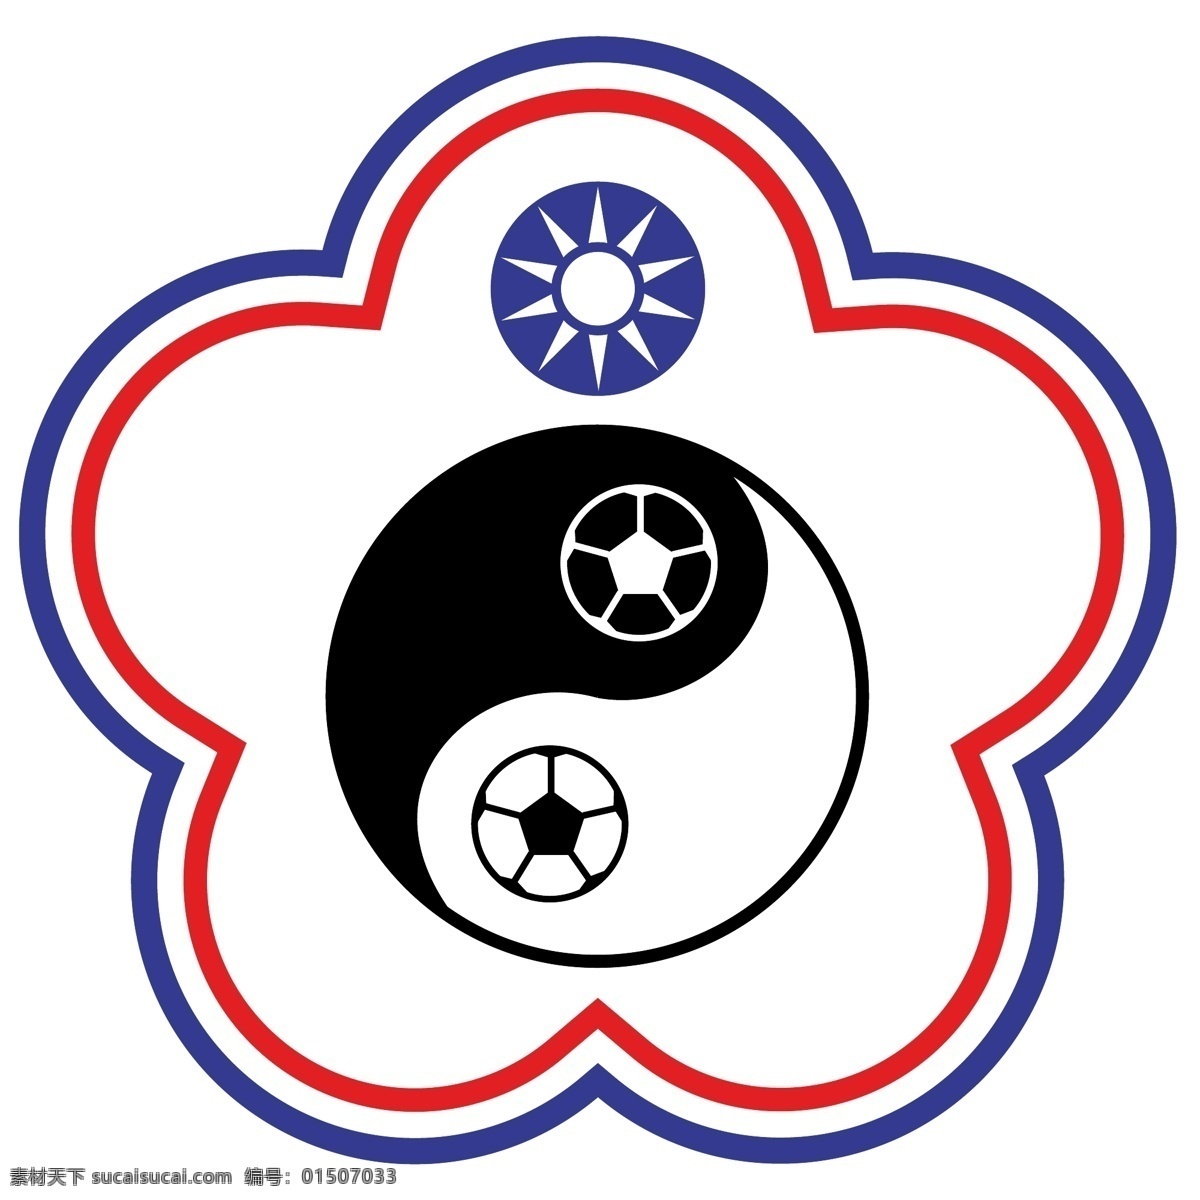 中国台北 足球 协会 自由 标志 中华 台北 免费 psd源文件 logo设计